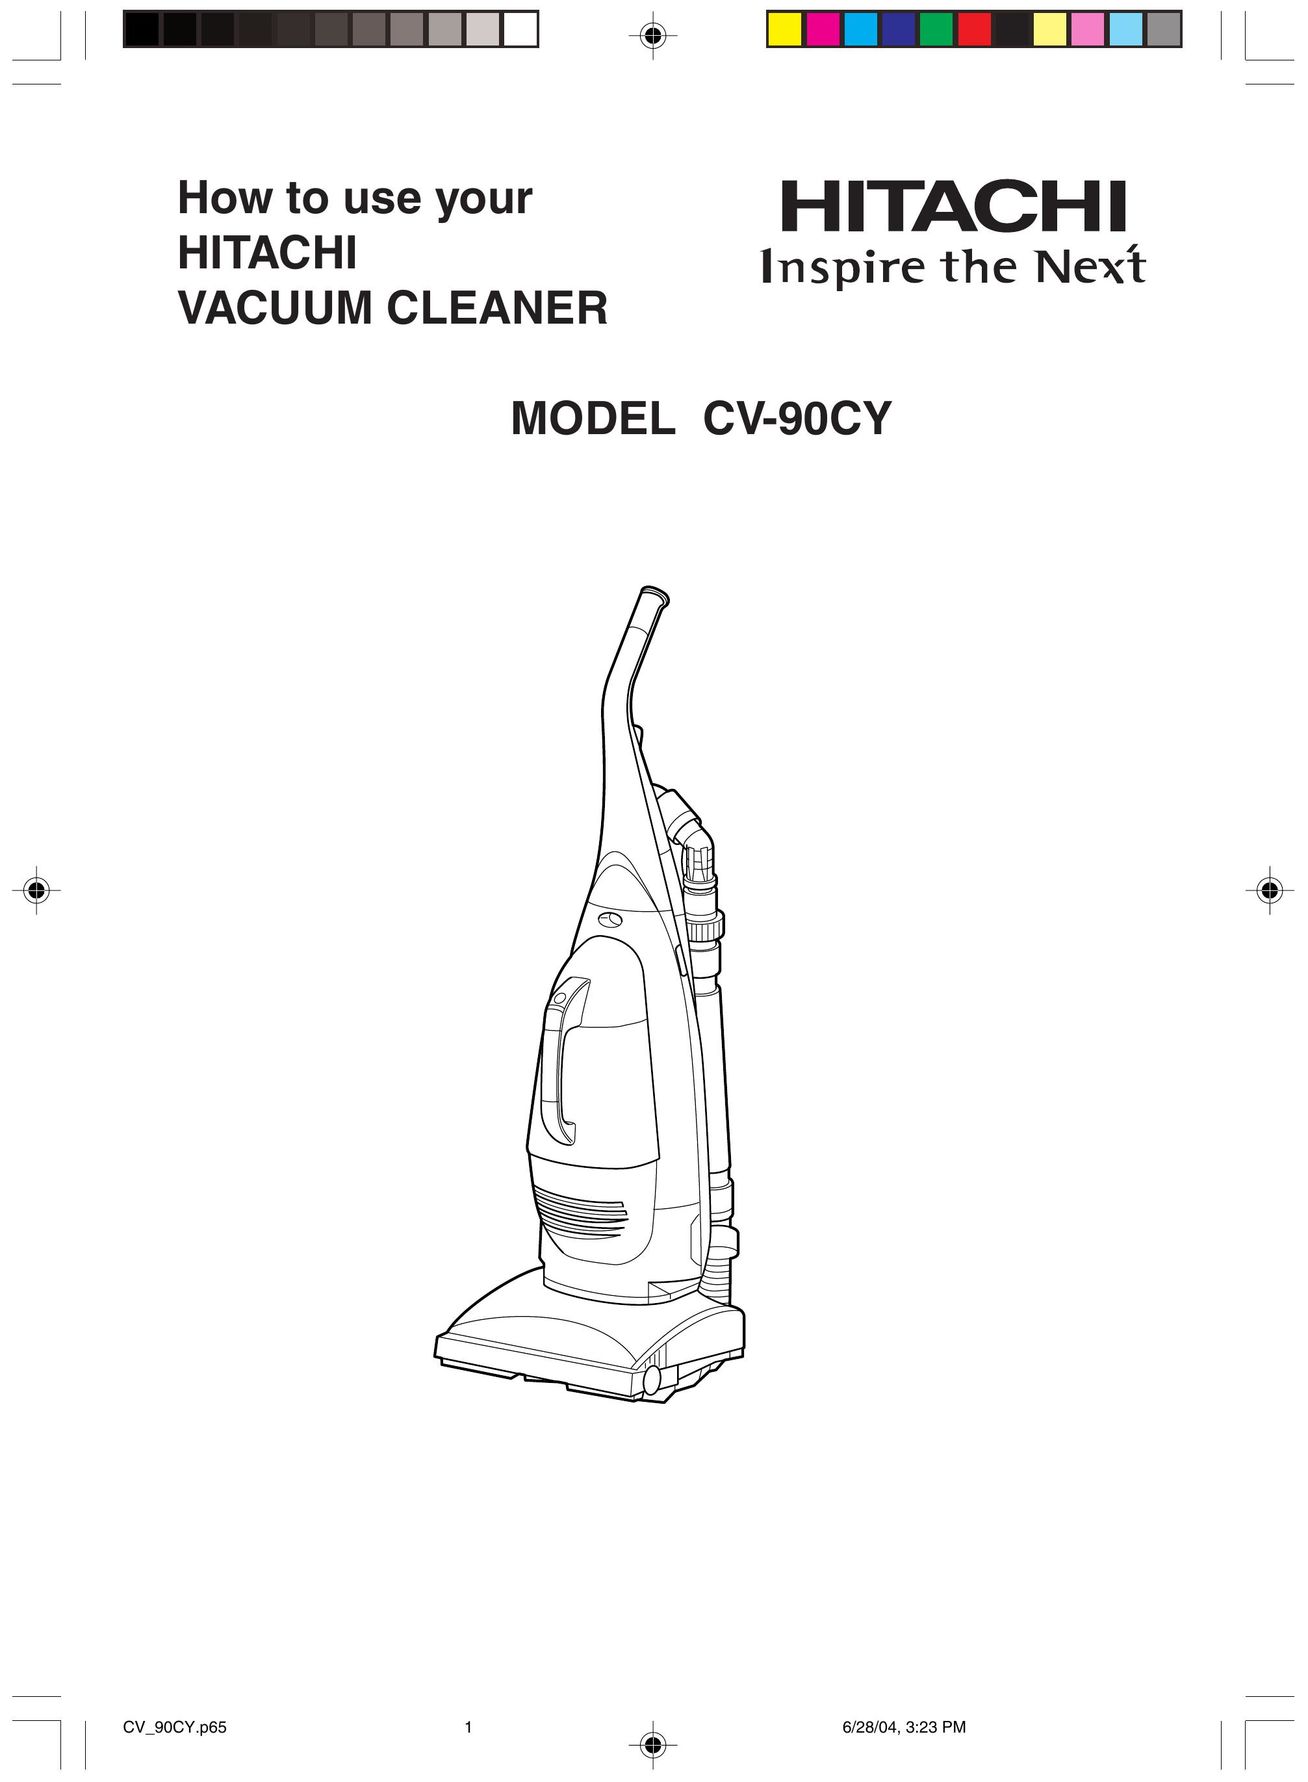 Hitachi CV-90CY Vacuum Cleaner User Manual